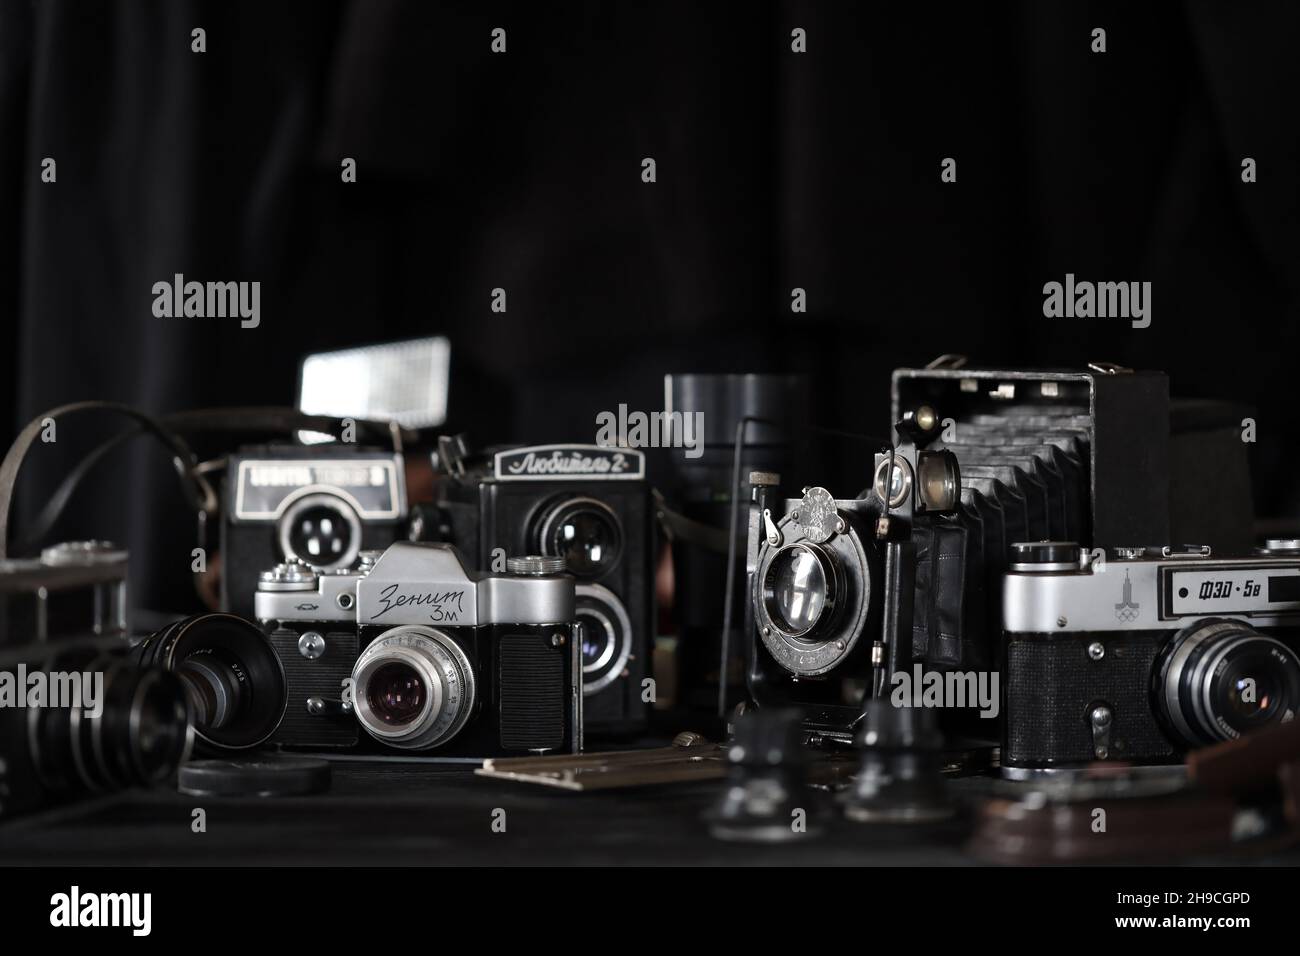 CHARKOV, UKRAINE - 27. APRIL 2021: Filmkameras und eine andere alte Retro-Fotoausrüstung auf schwarzem Holztisch in der Dunkelkammer des Fotografen. Foto Stockfoto